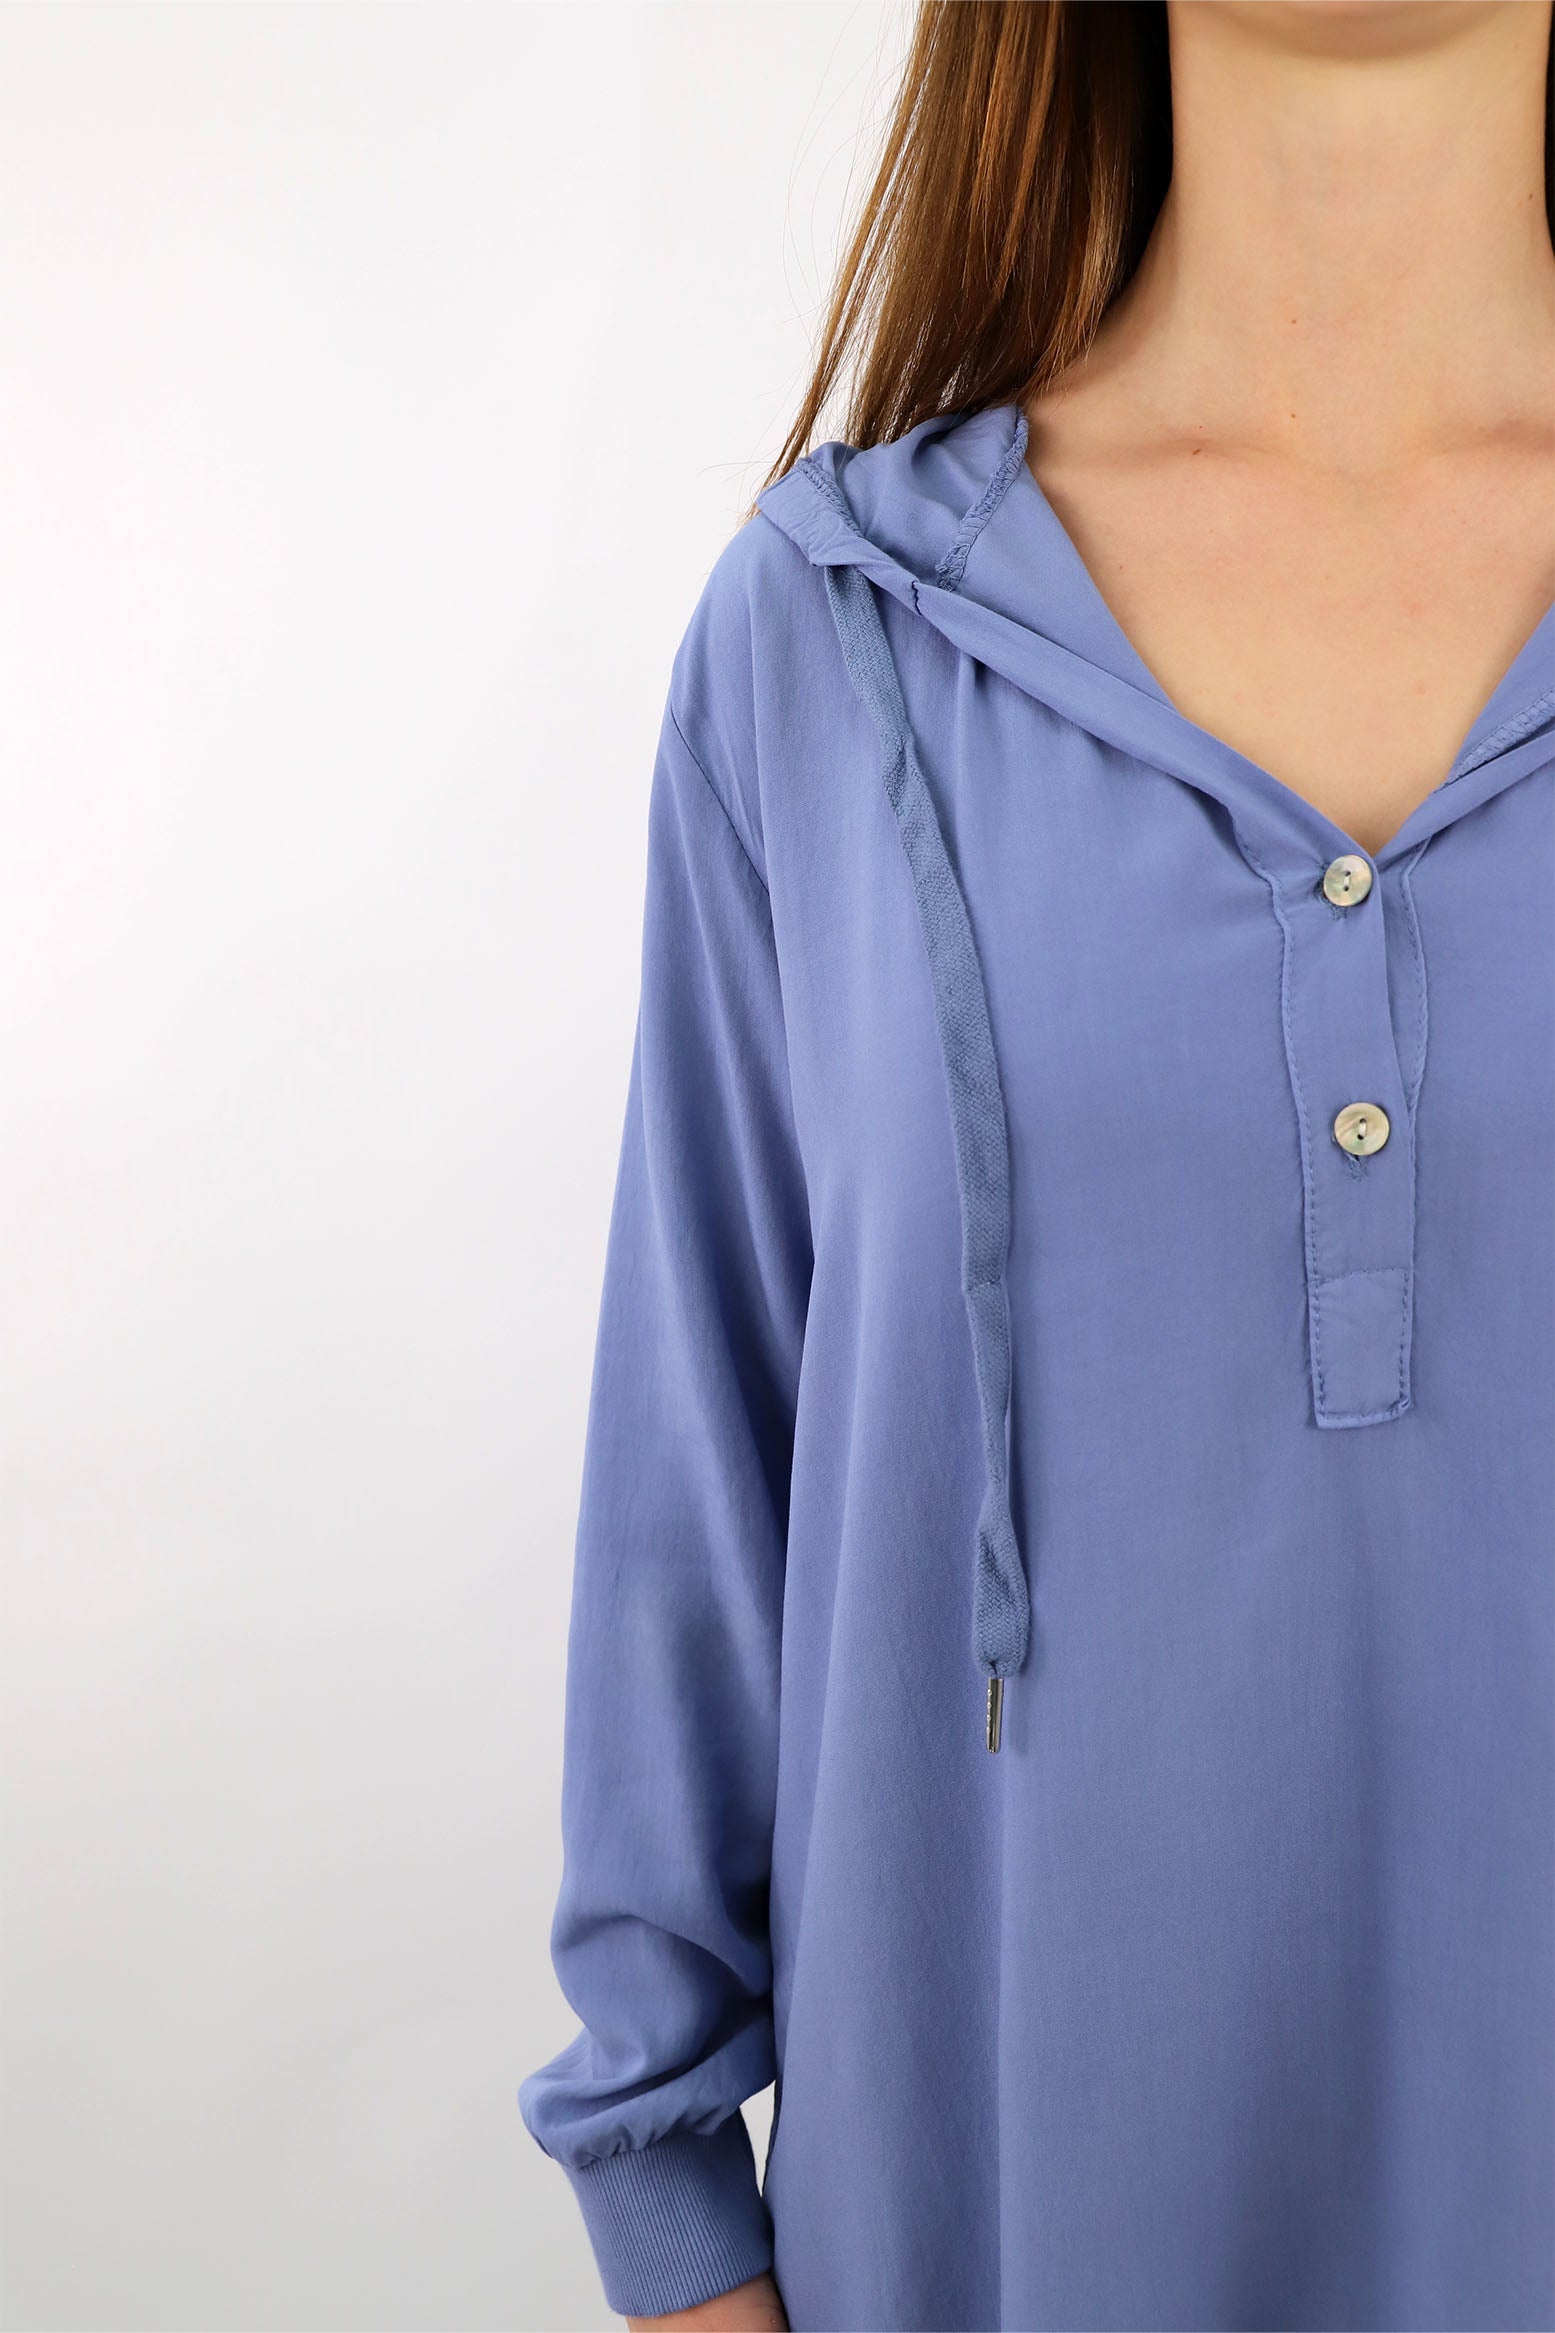 Komfort-Bluse mit Kapuze - Blau